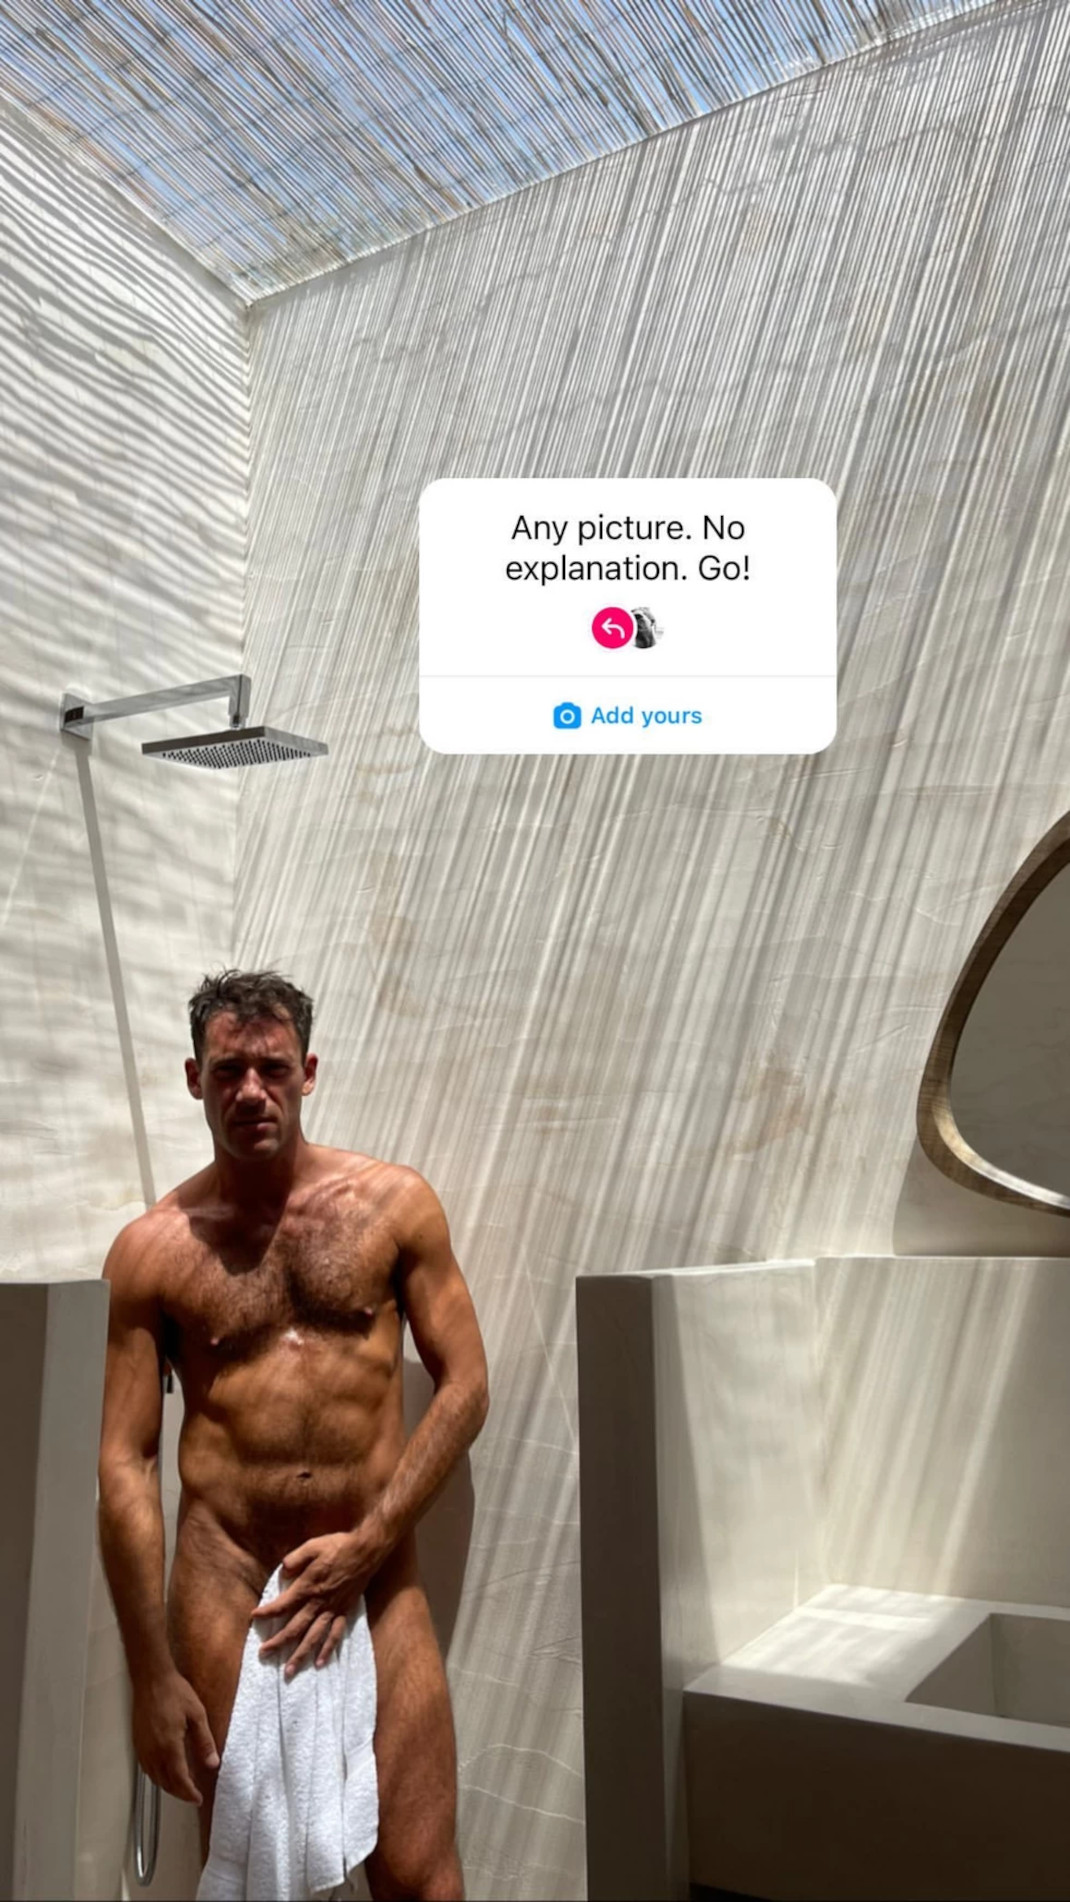 O Aντίνοος Αλμπάνης ποζάρει γυμνός στο ντουζ κρατώντας μόνο μια πετσέτα 